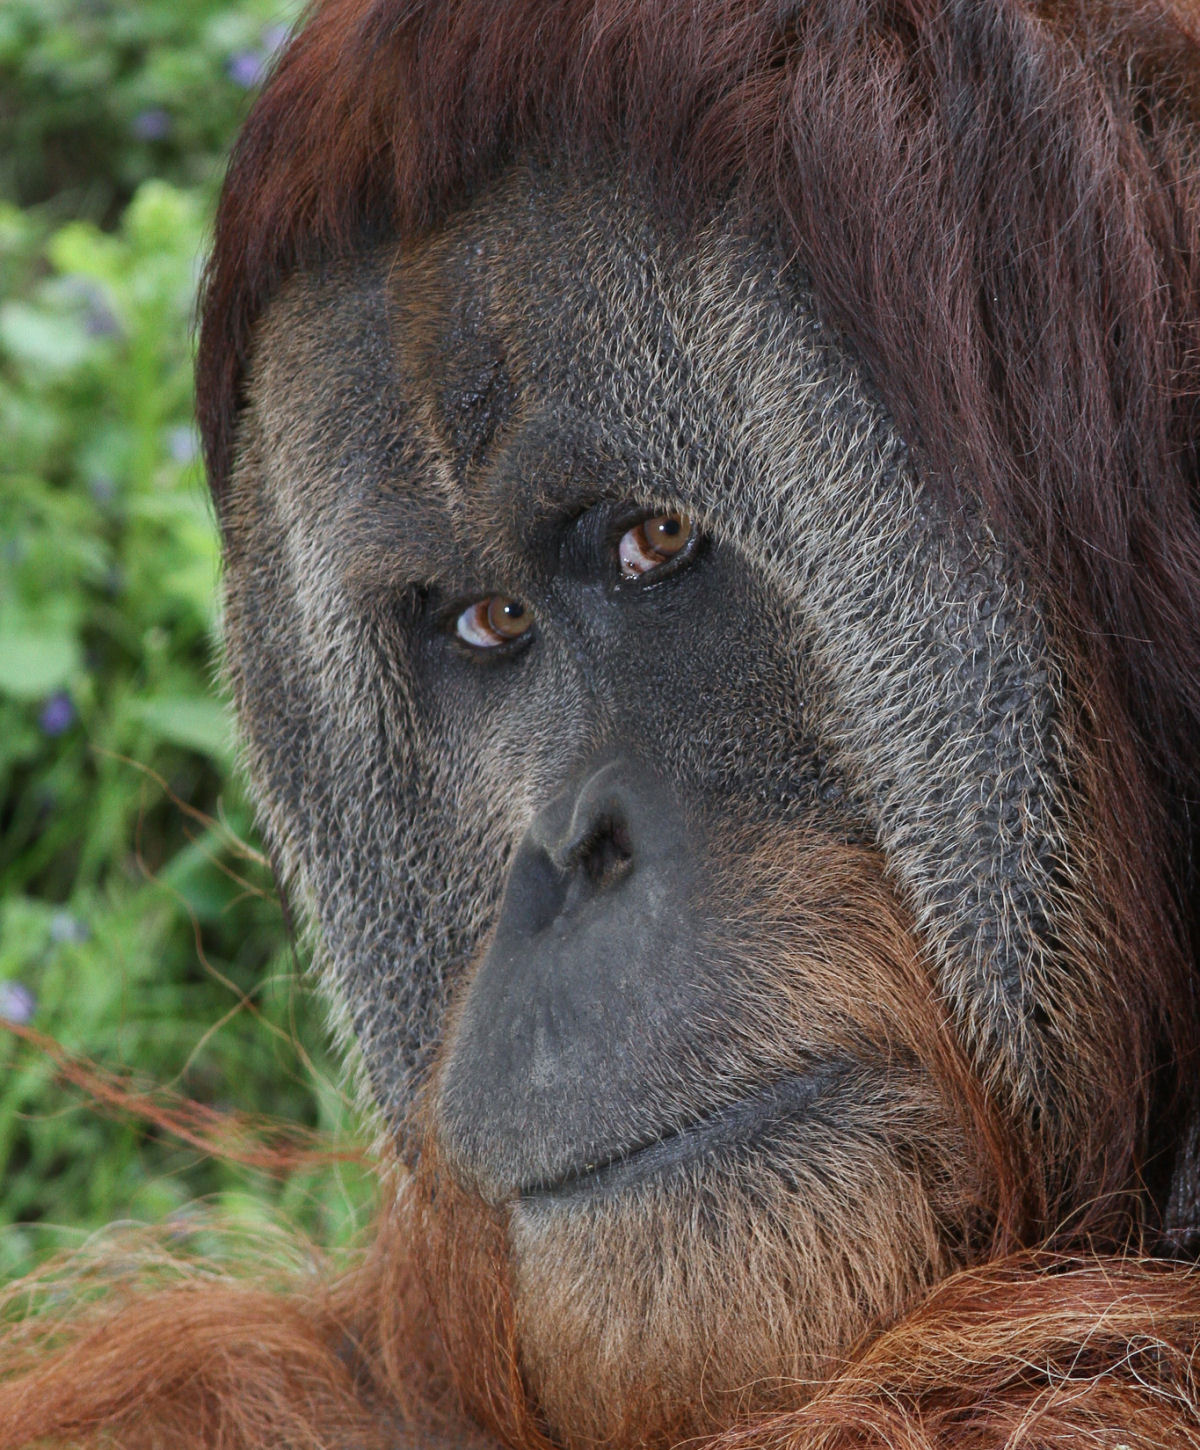 Mistério: Por que alguns orangotangos machos têm a cara flangeada e outros não? 01